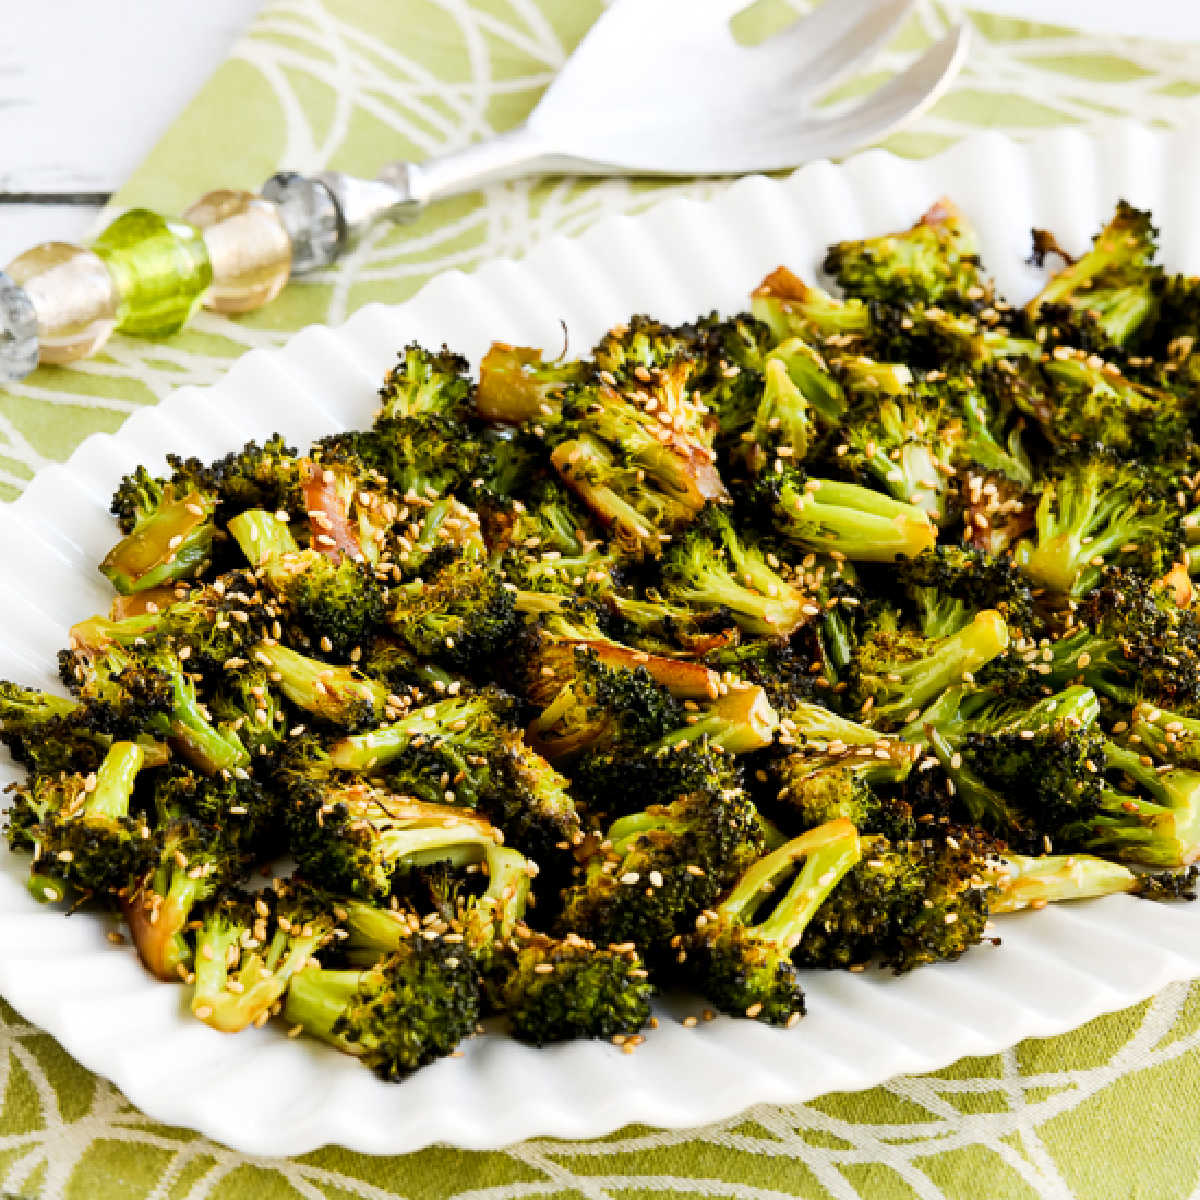 Snabbrostad broccoli med sojasås och sesam visas på serveringsfat, fyrkantig bild